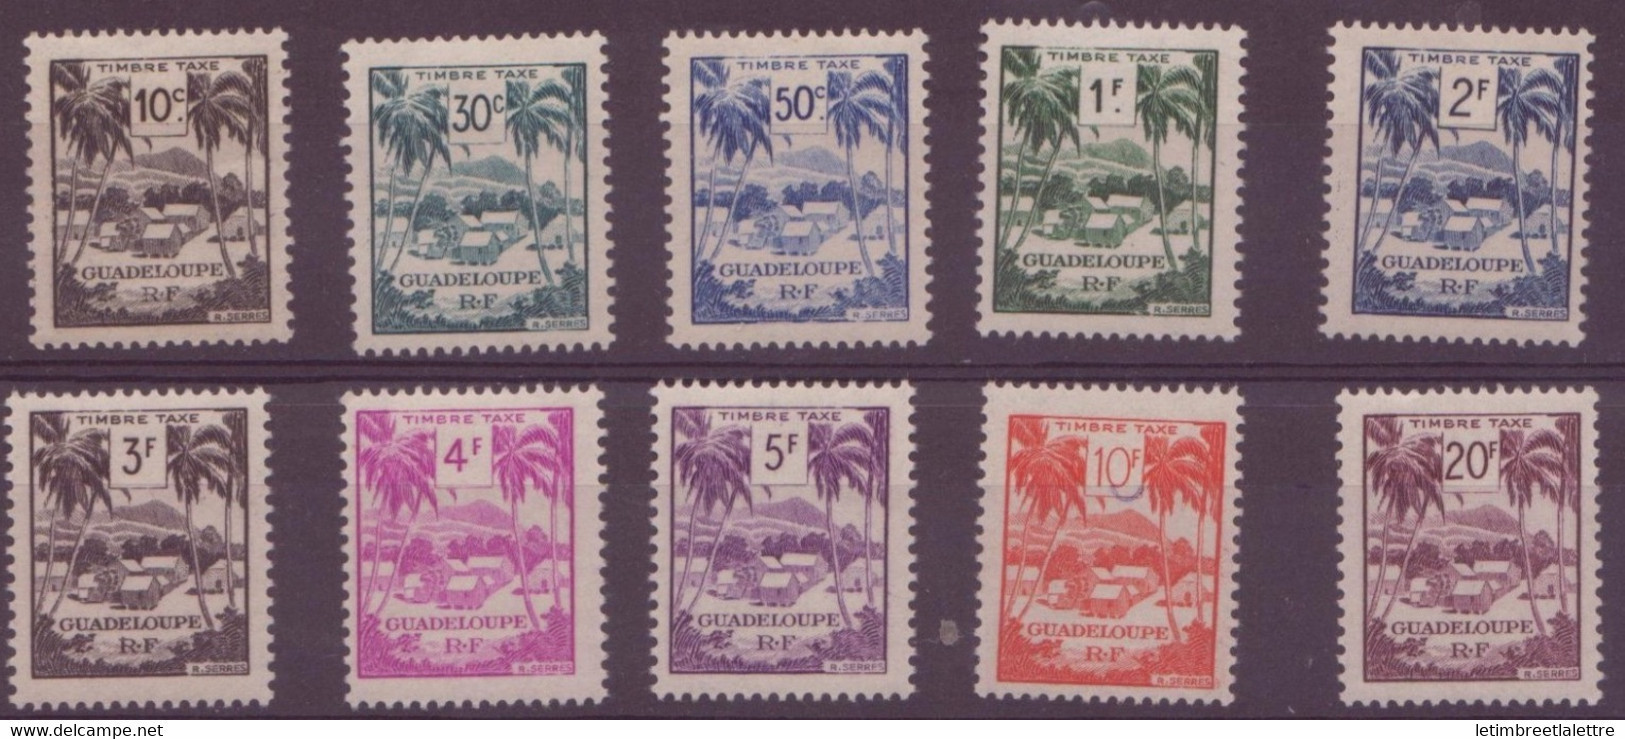 ⭐ Guadeloupe - Taxe - YT N° 41 à 50 ** - Neuf Sans Charnière - 1947 ⭐ - Portomarken